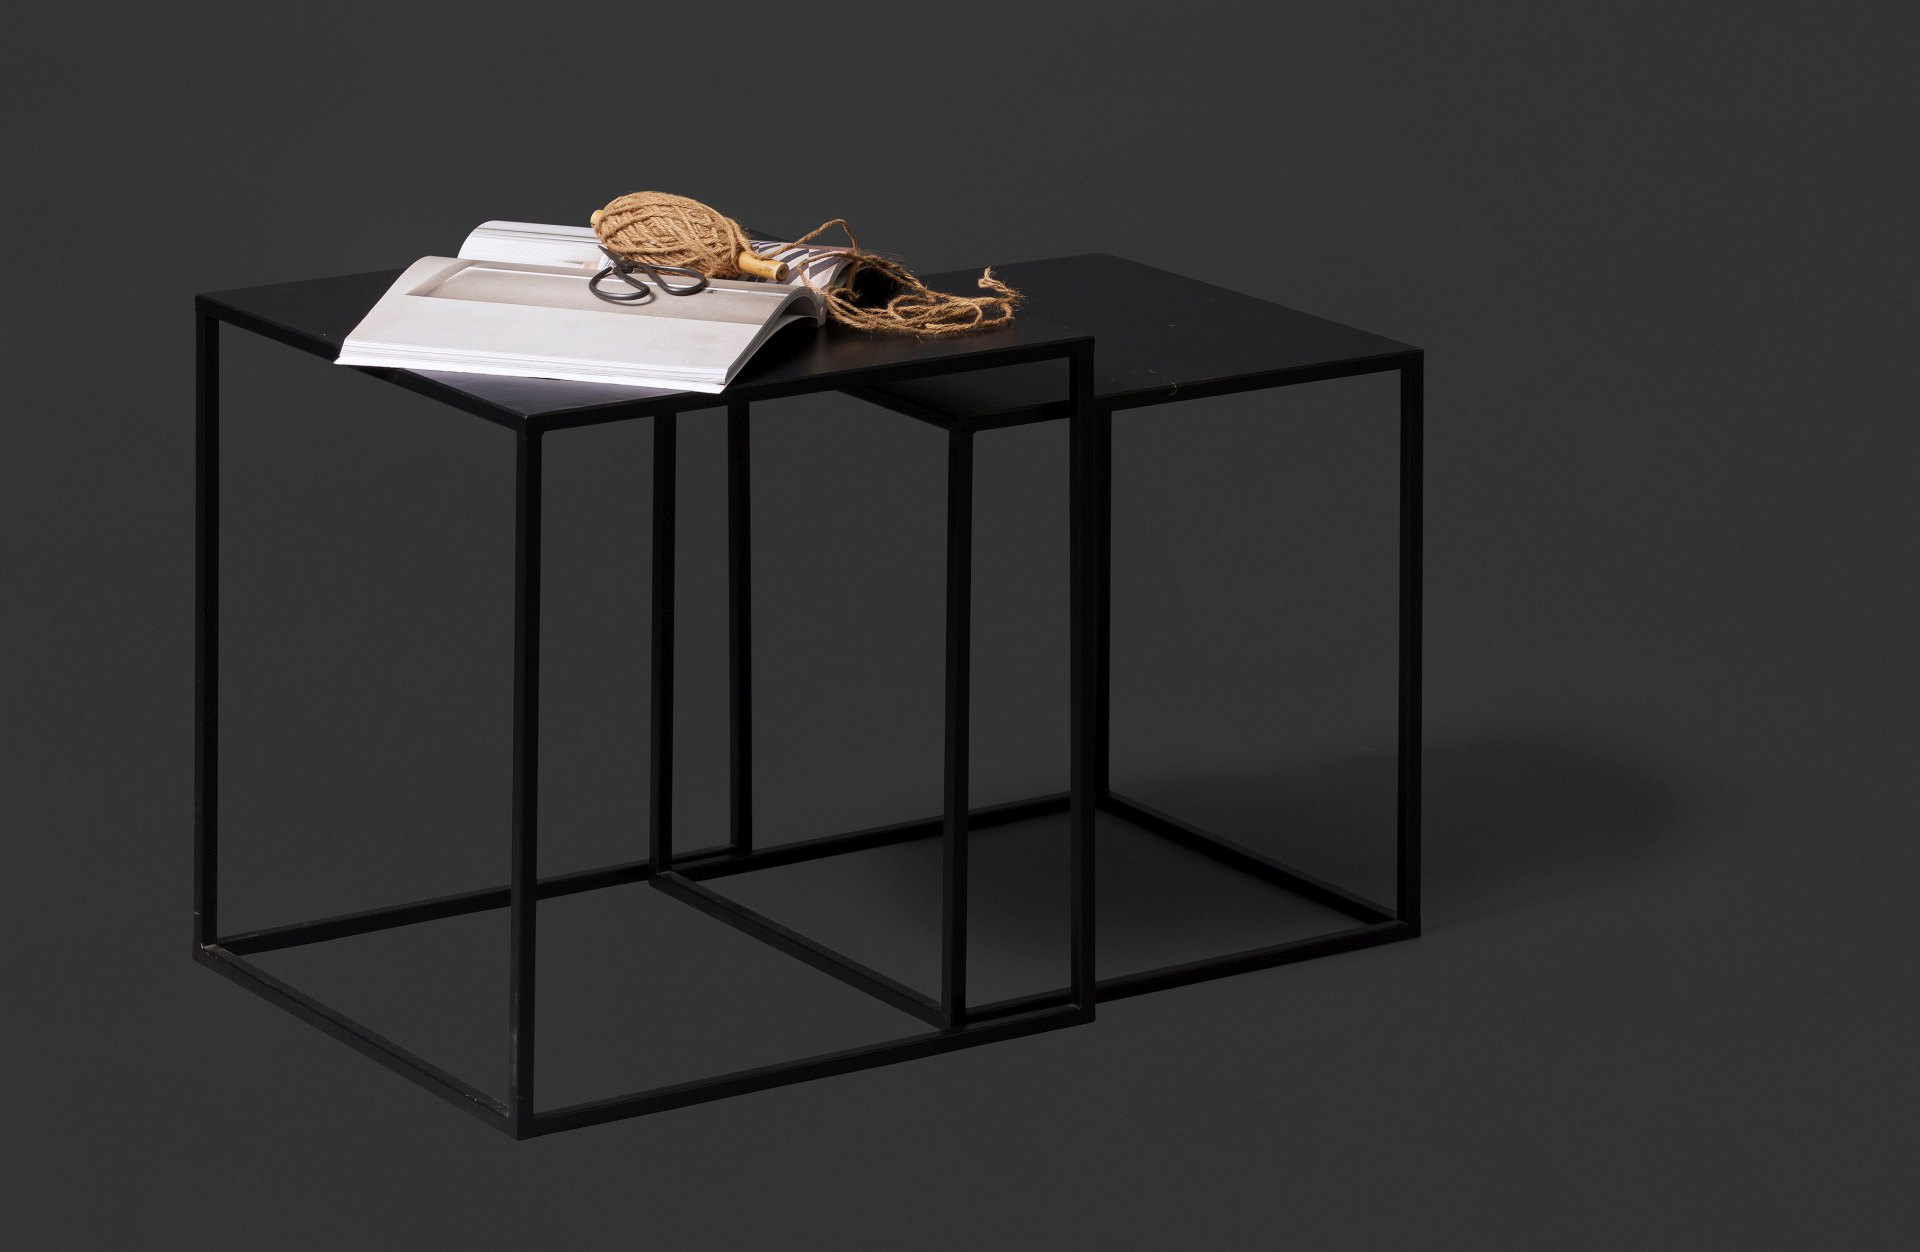 Der Beistelltisch Ziva wurde aus Metall gefertigt, welches einen schwarzen Farbton besitzt. Der Tisch ist als 2er-Set verfügbar und hat ein modernes Design.